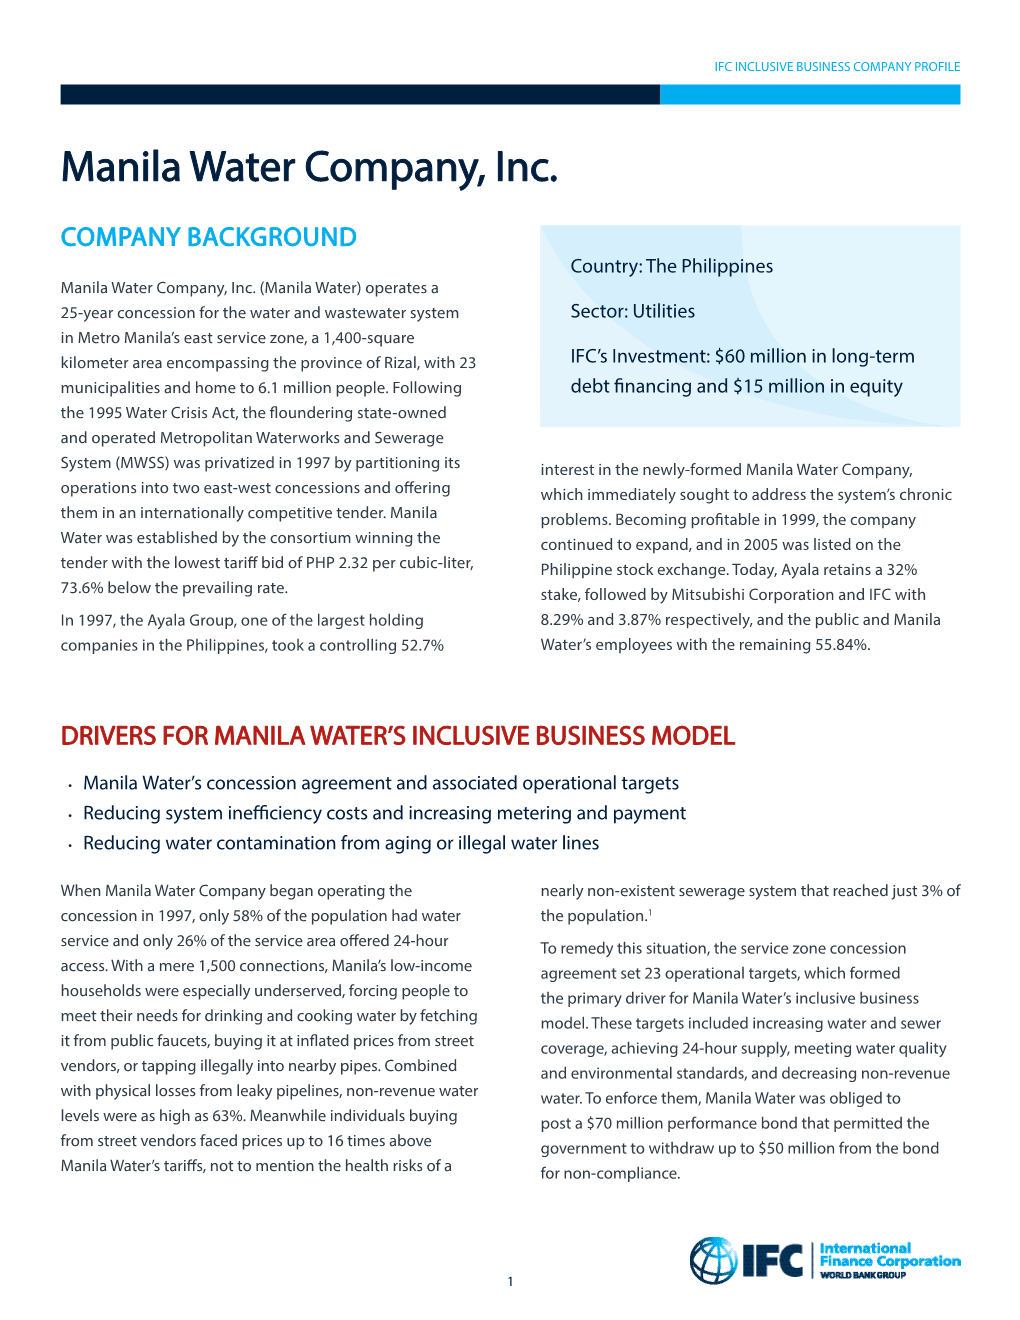 Manila Water Company, Inc